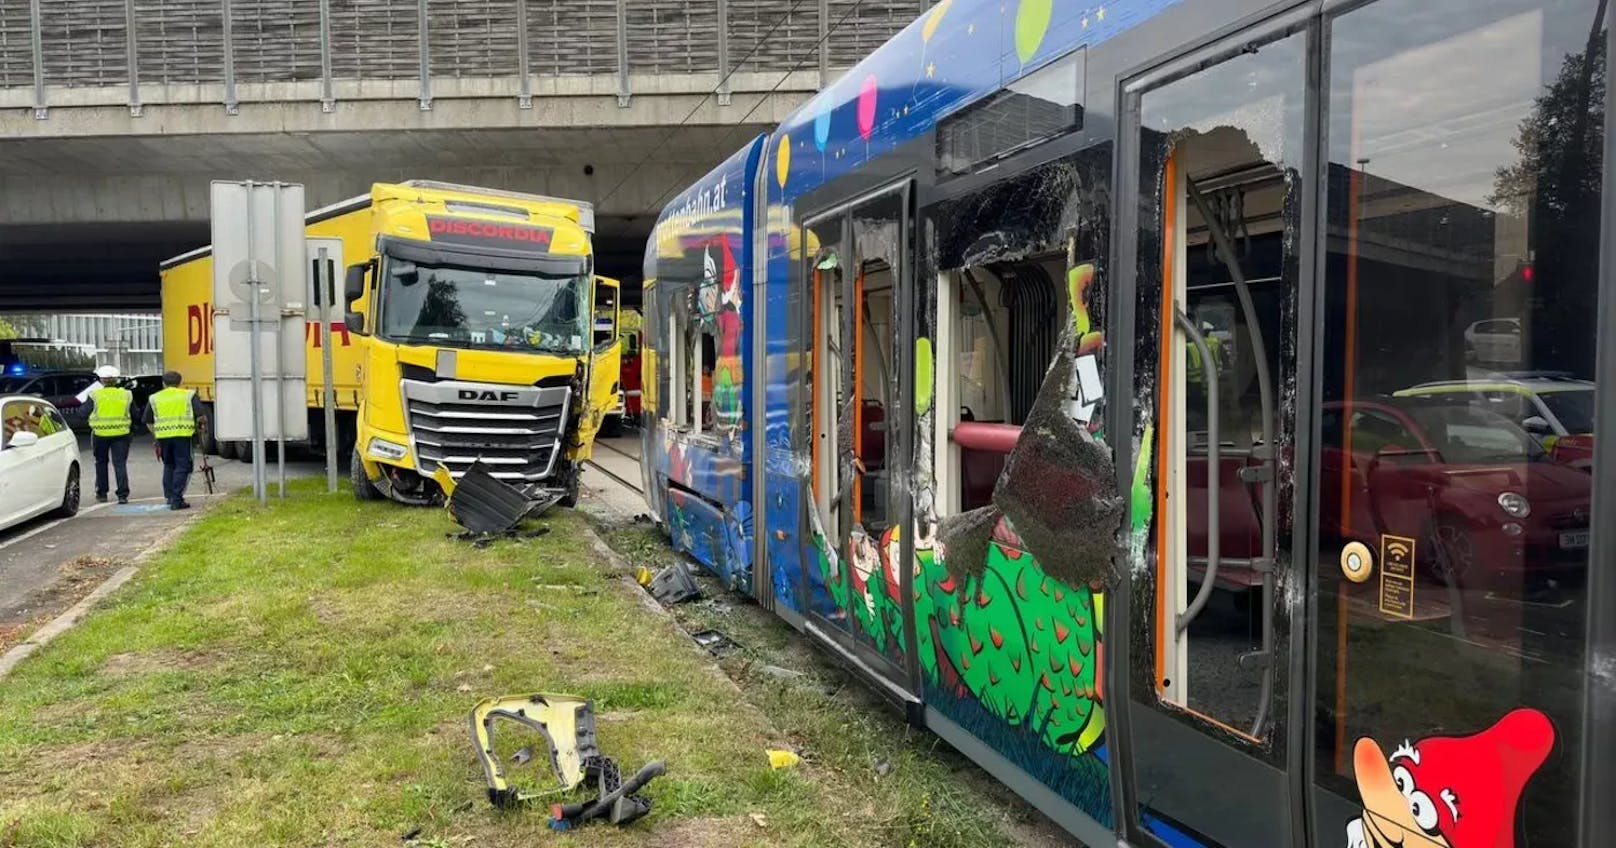 Lkw kracht gegen Straßenbahn – 20 verletzte Fahrgäste